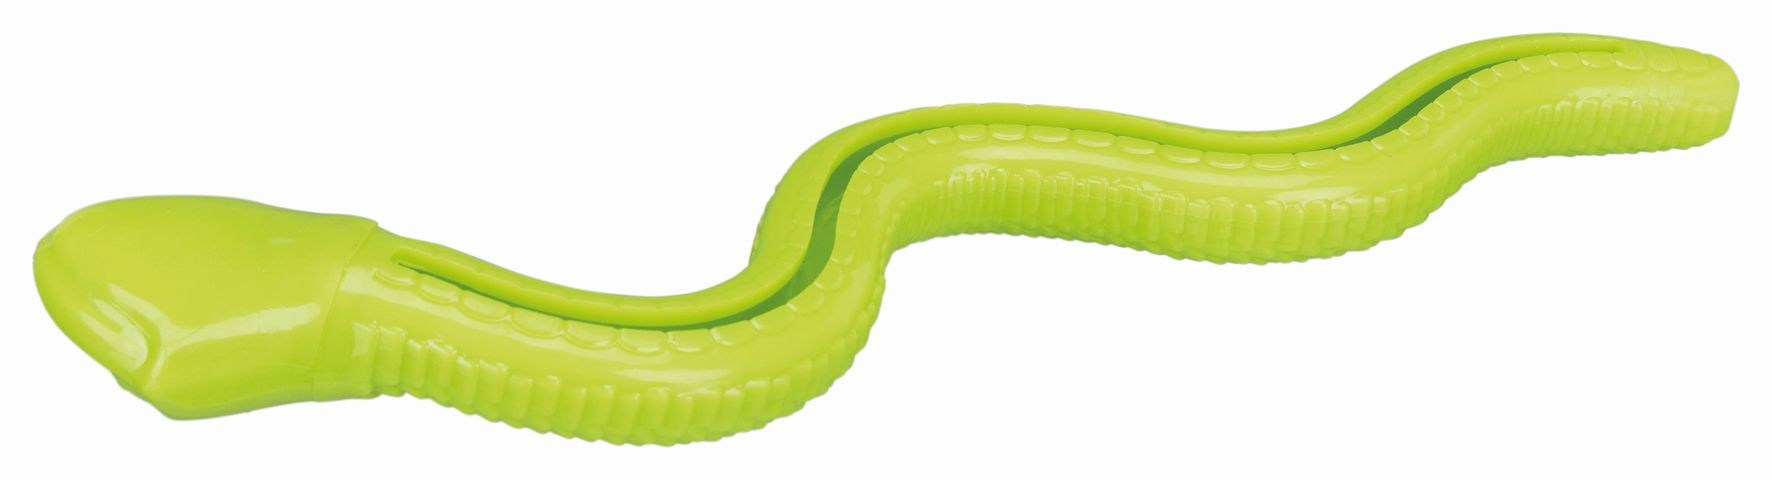 Игрушка для лакомств Snack-Snake, TPR